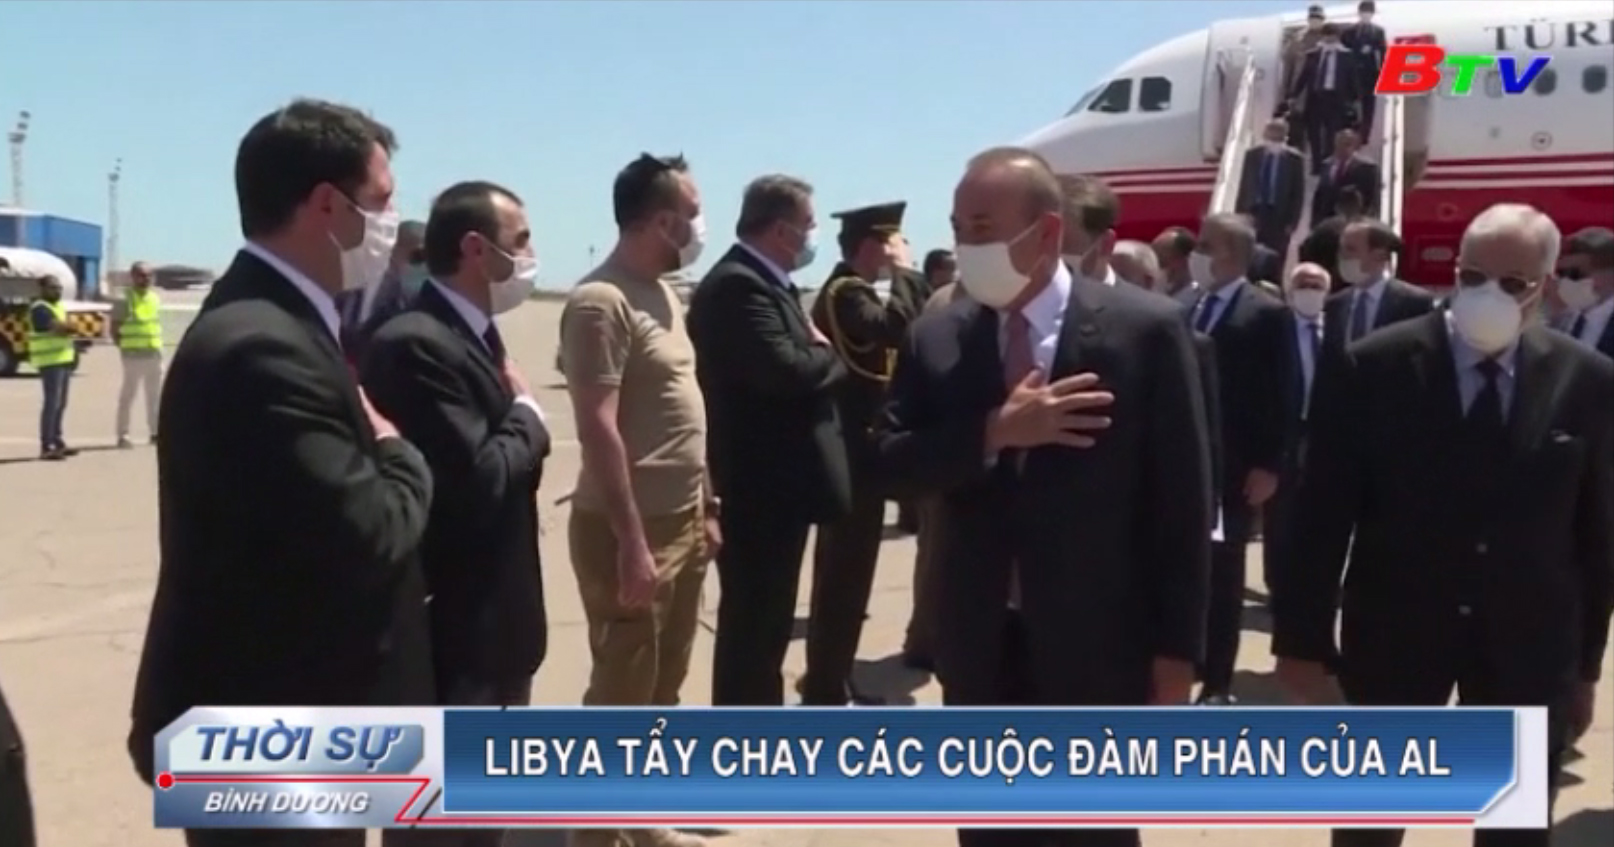 Libya tẩy chay các cuộc đàm phán của AL